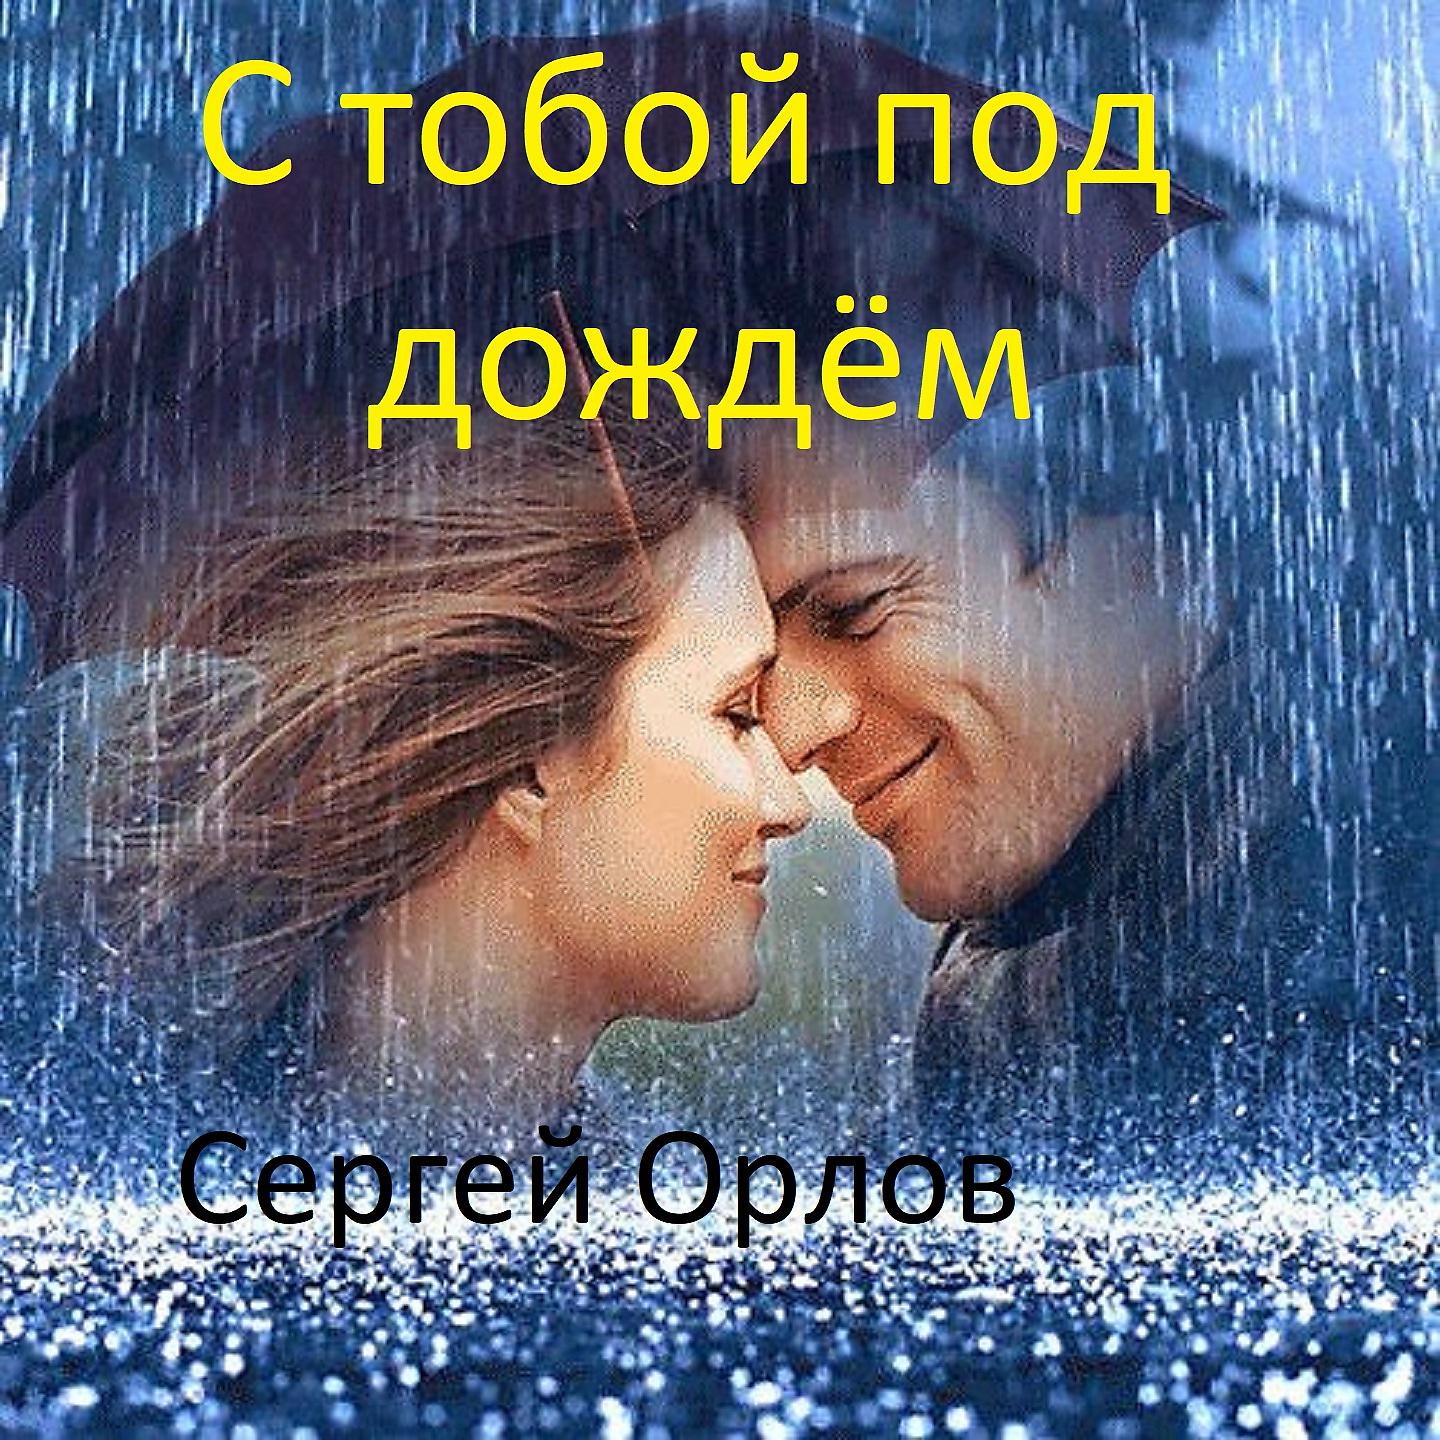 Теплый дождь песня слушать. Двое под дождем. Любовь под дождем. Пара под дождем. Влюбленные под дождем.